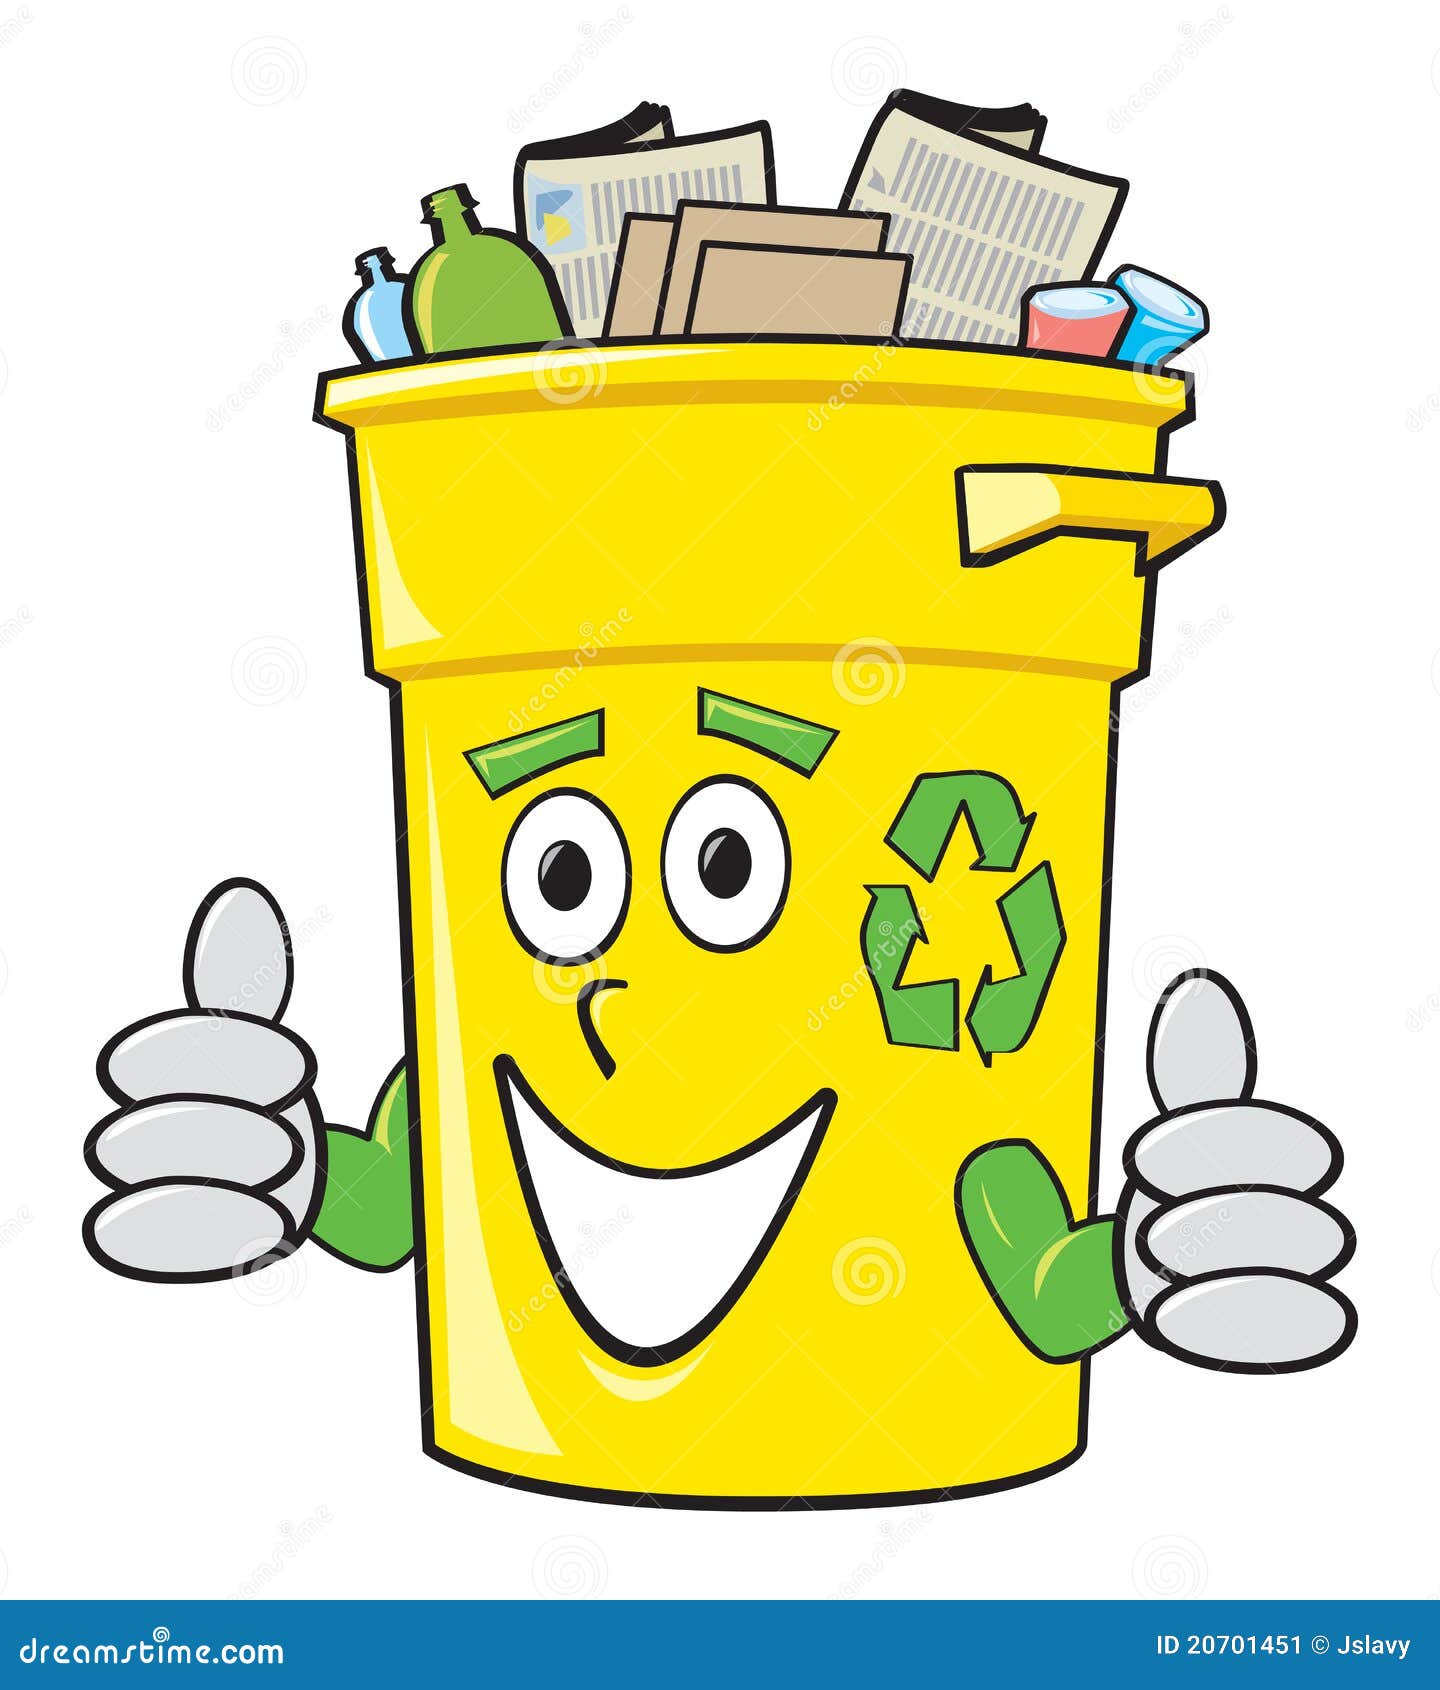 cartoon recycling bin